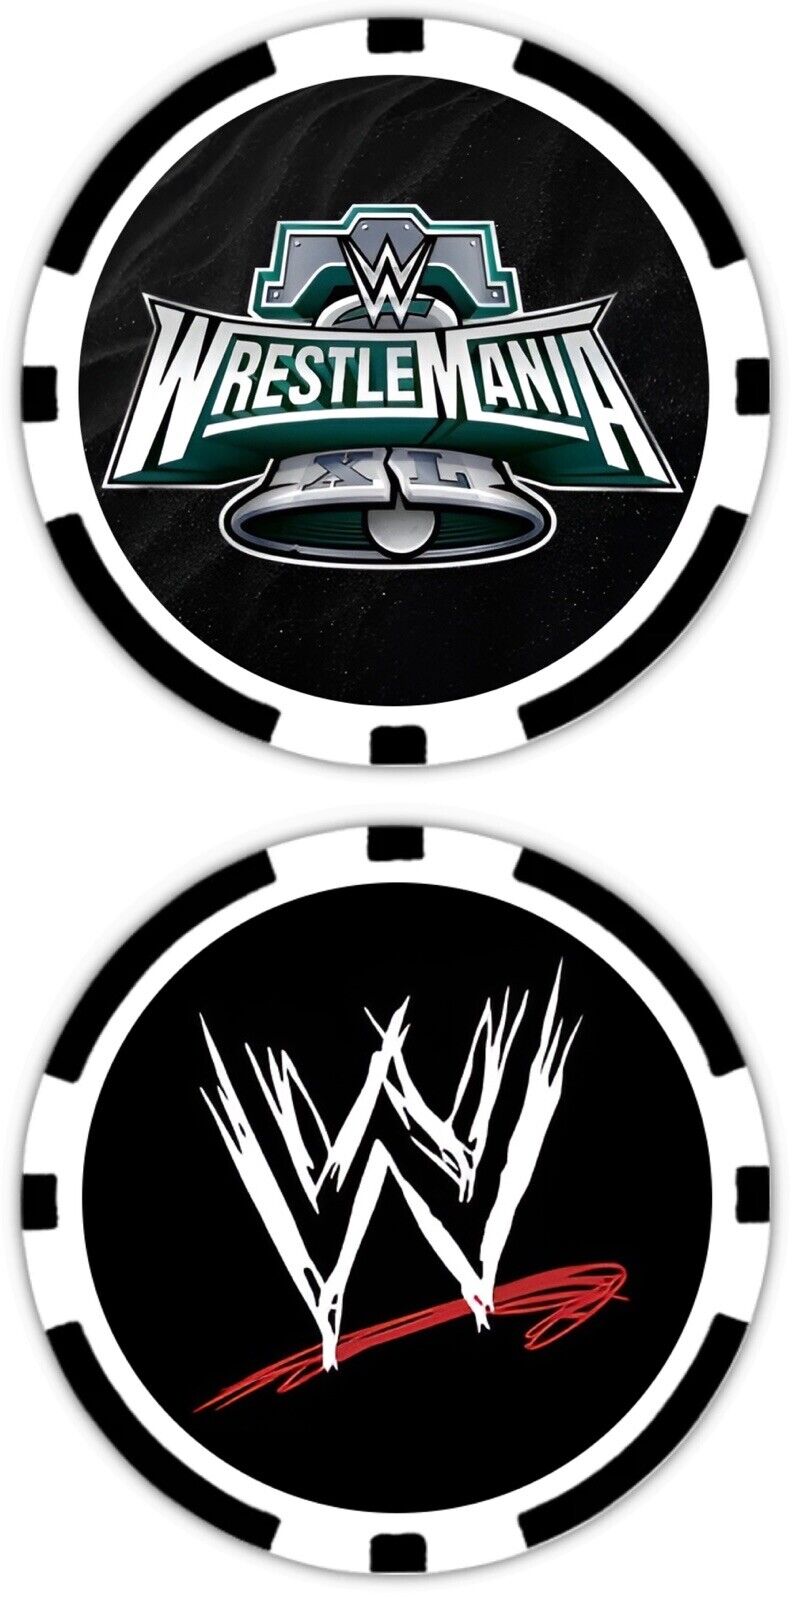 WRESTLEMANIA 40 - LOGO - WORLD WRESTLING ENTERTAINMENT - WWE - POKER CHIP